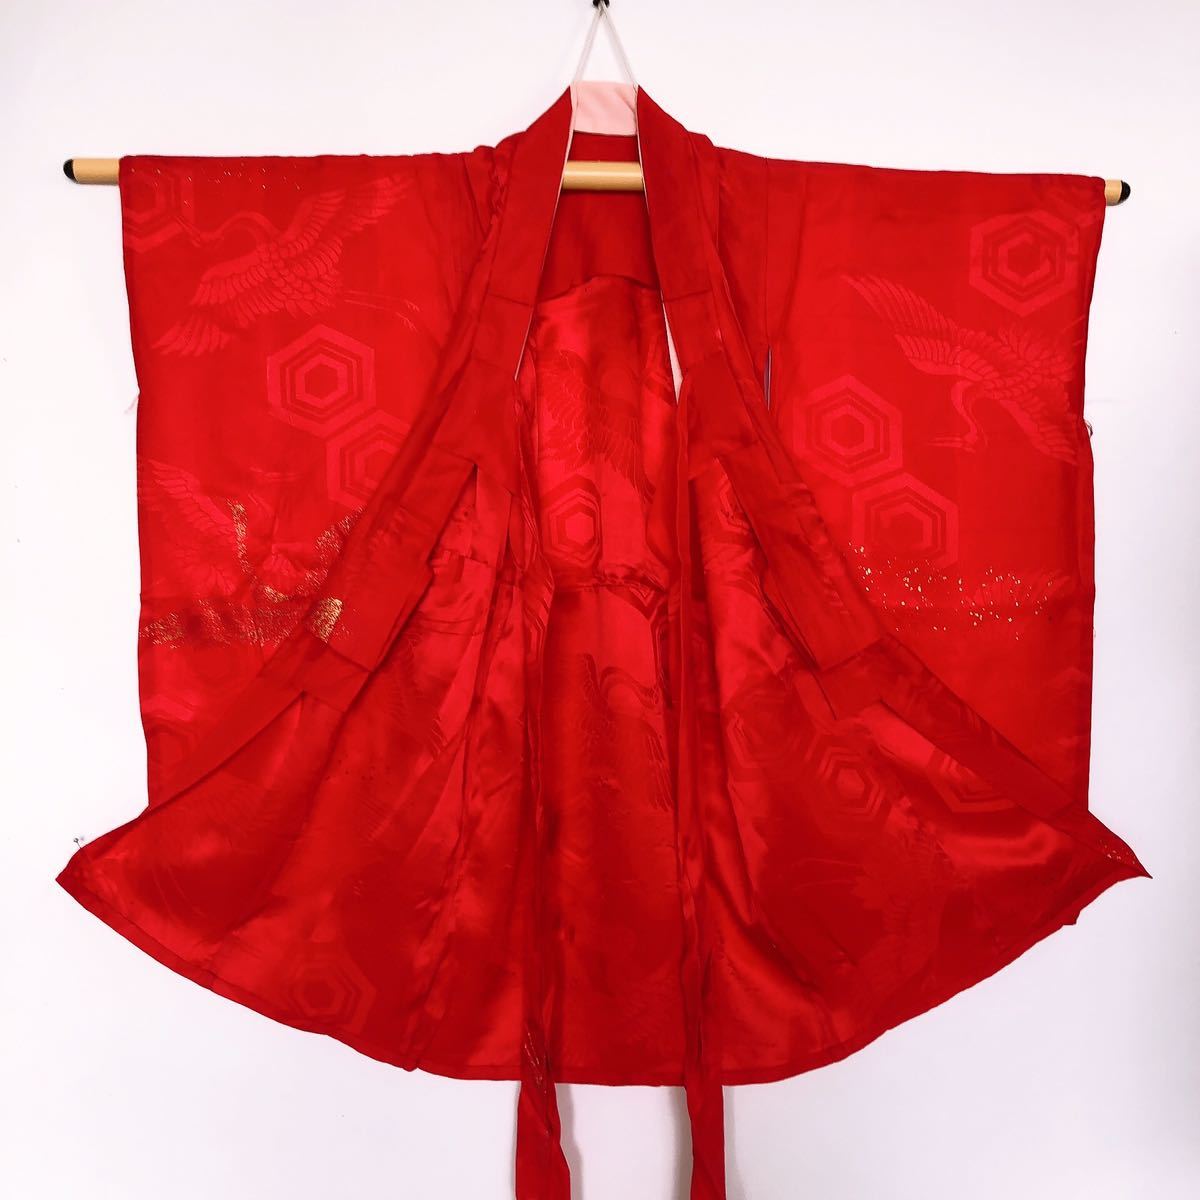 [ тканый .R] retro длинное нижнее кимоно девочка журавль красный фотосъемка длина рукава 38. ширина 34. длина одежды 76.* KIMONO JAPAN* включение в покупку возможно * o4141